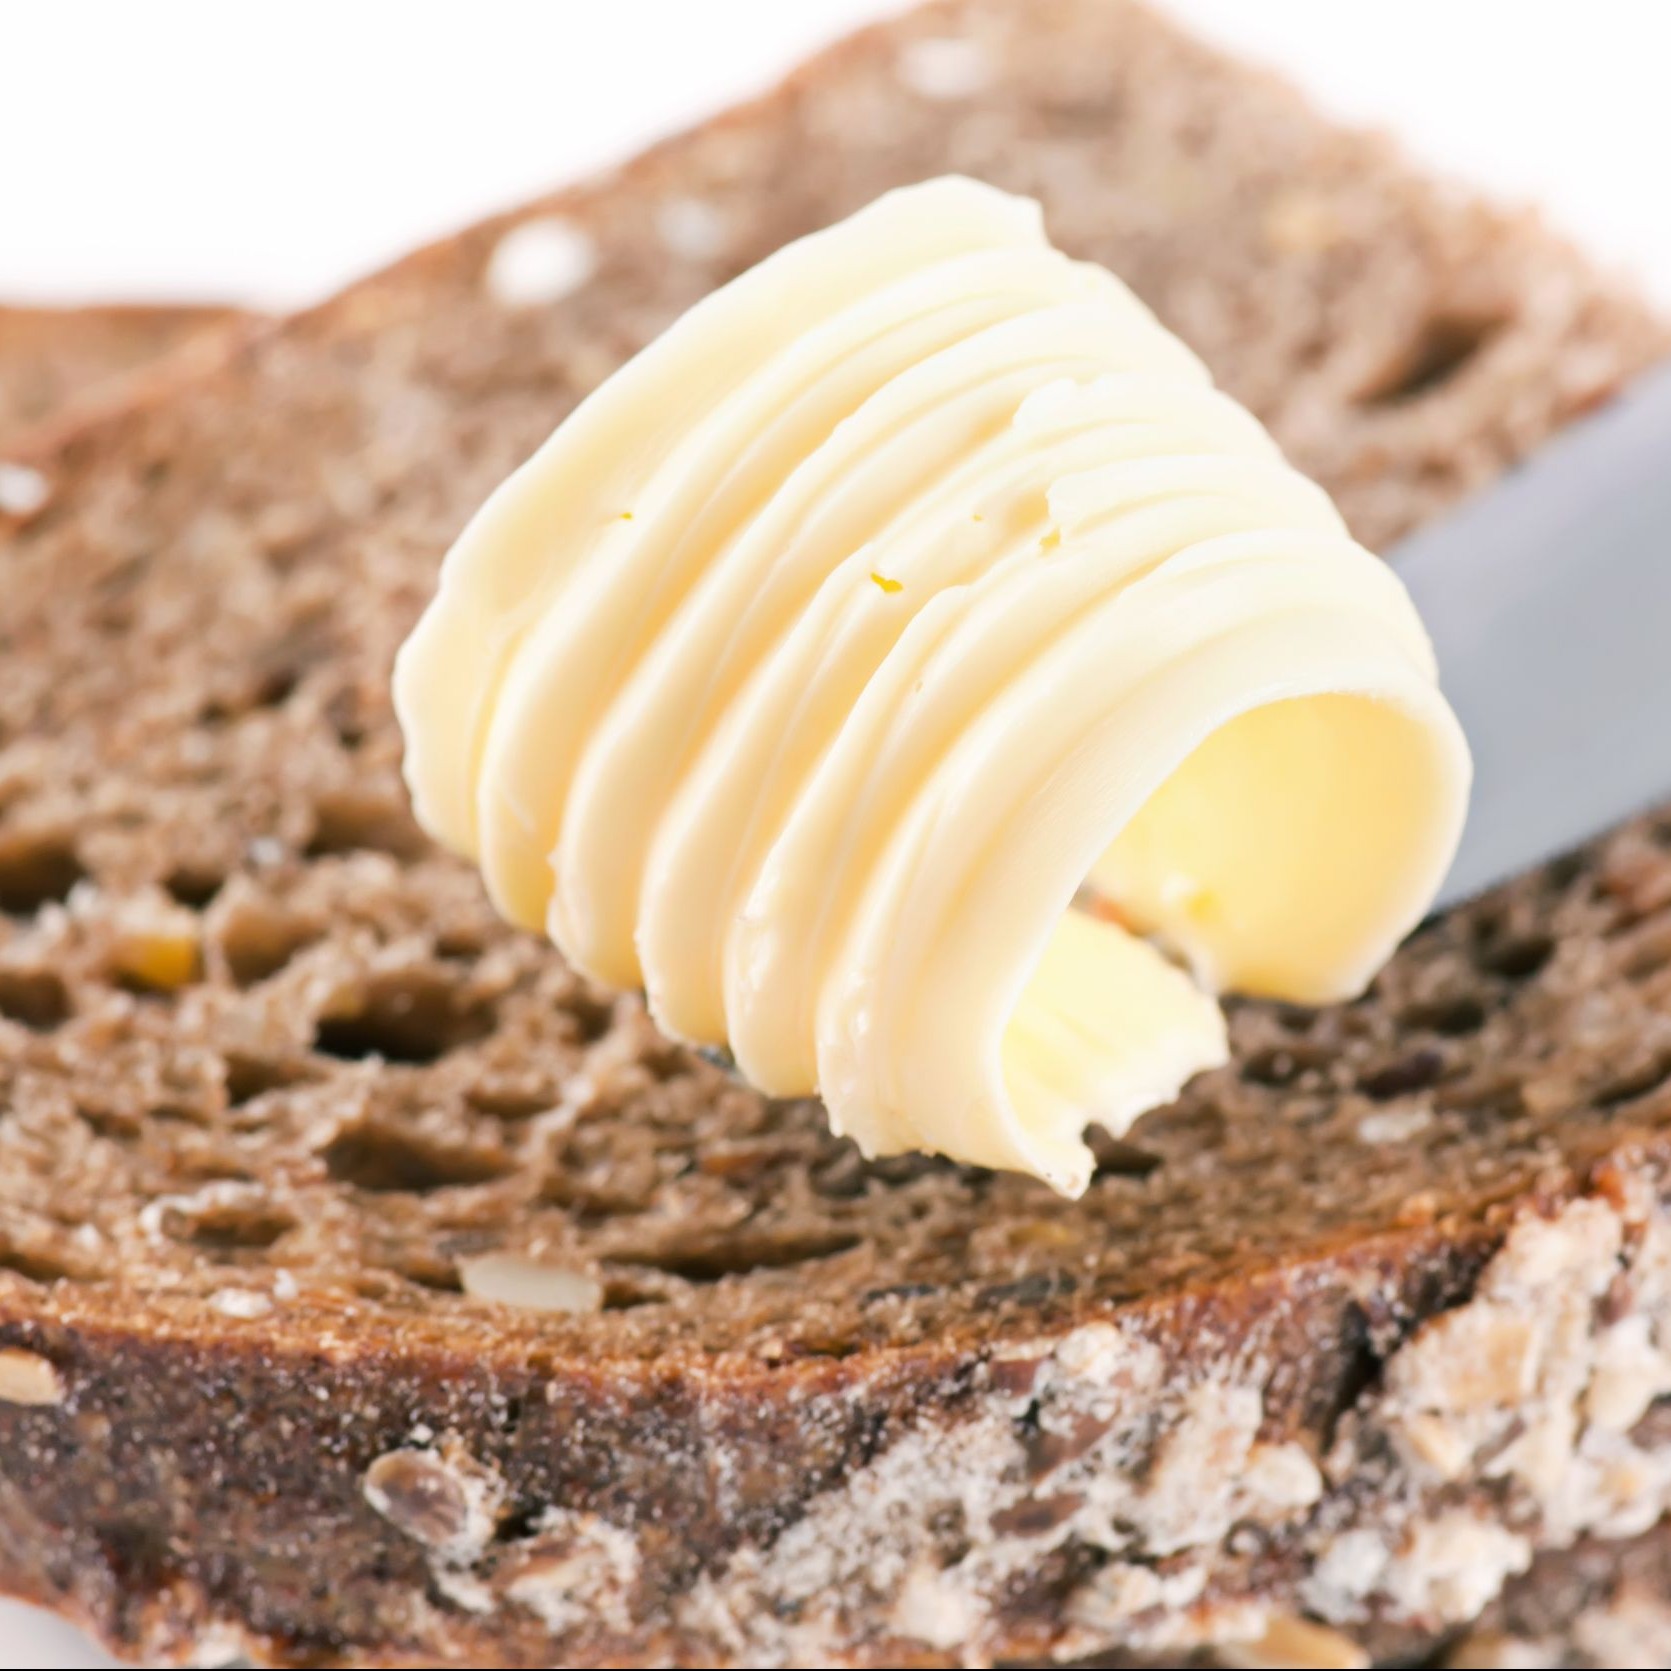 10048055 -一片面包和黄油卷